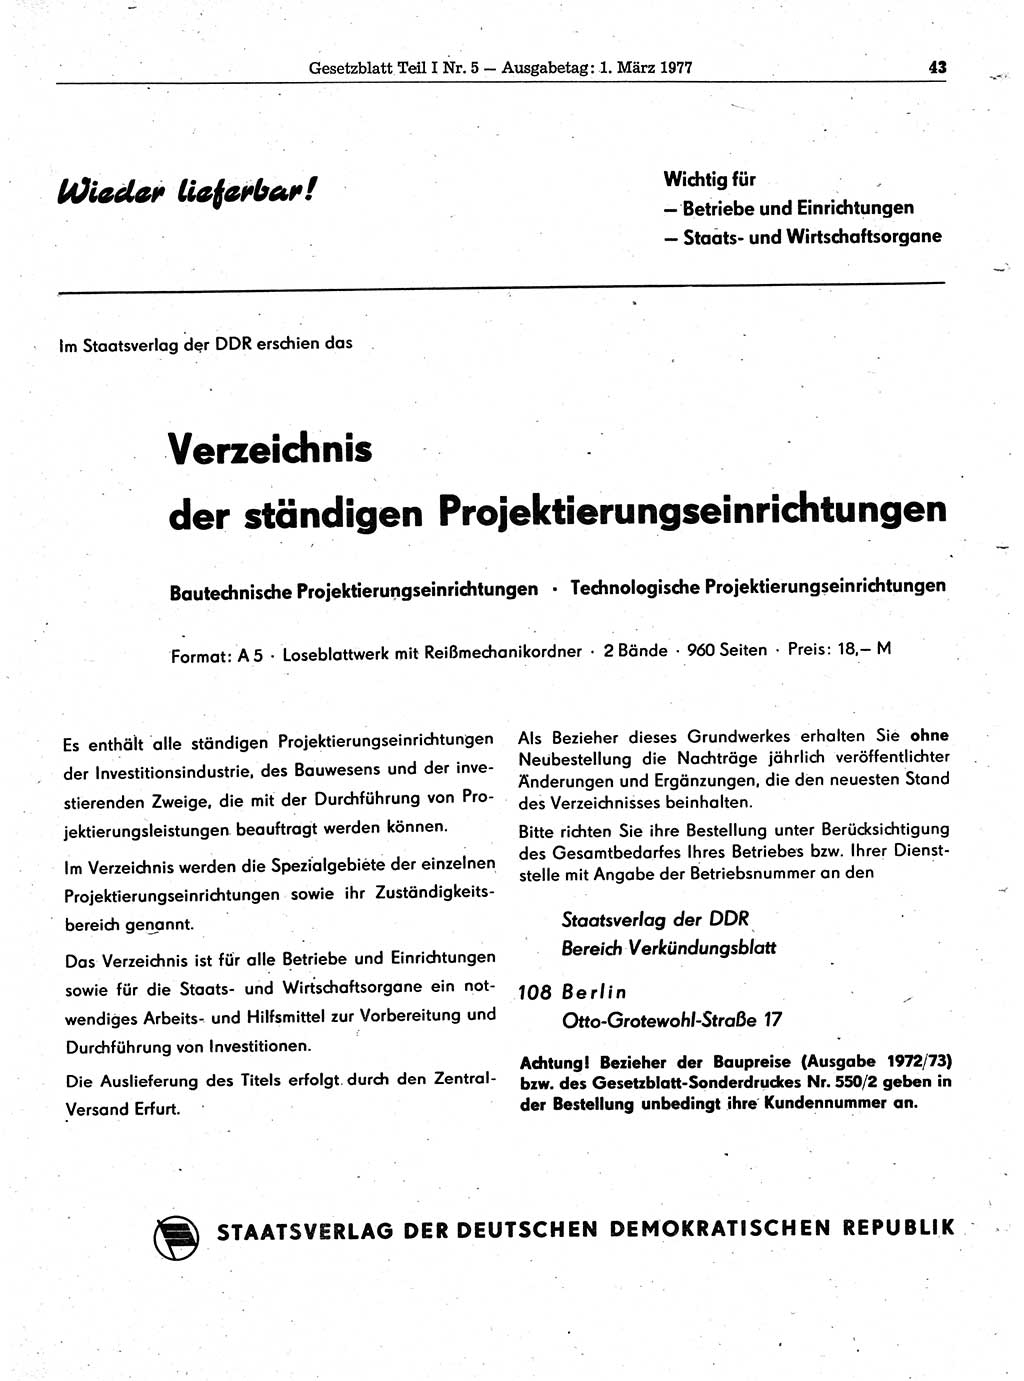 Gesetzblatt (GBl.) der Deutschen Demokratischen Republik (DDR) Teil Ⅰ 1977, Seite 43 (GBl. DDR Ⅰ 1977, S. 43)